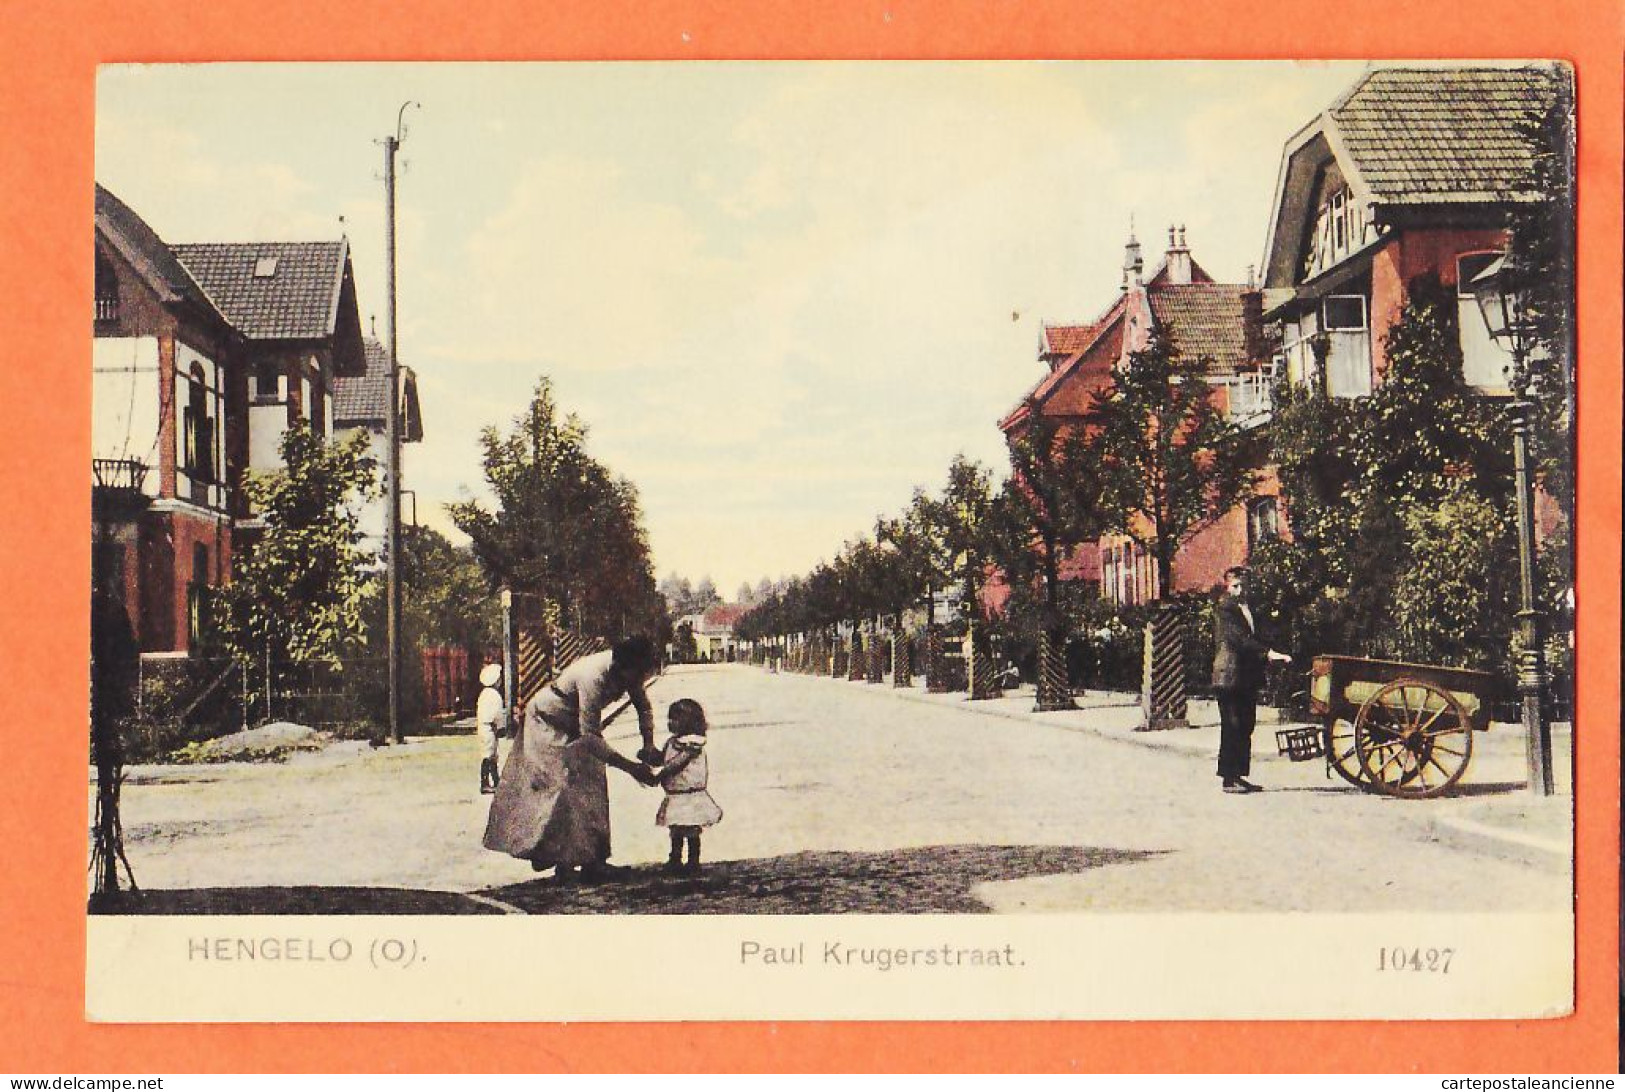 05099 / ⭐ ◉  HENGELO Overijssel PAUL Krugerstraat 1910s NAUTA Velsen 10427 Nederland Niederlande Pays-Bas - Hengelo (Ov)